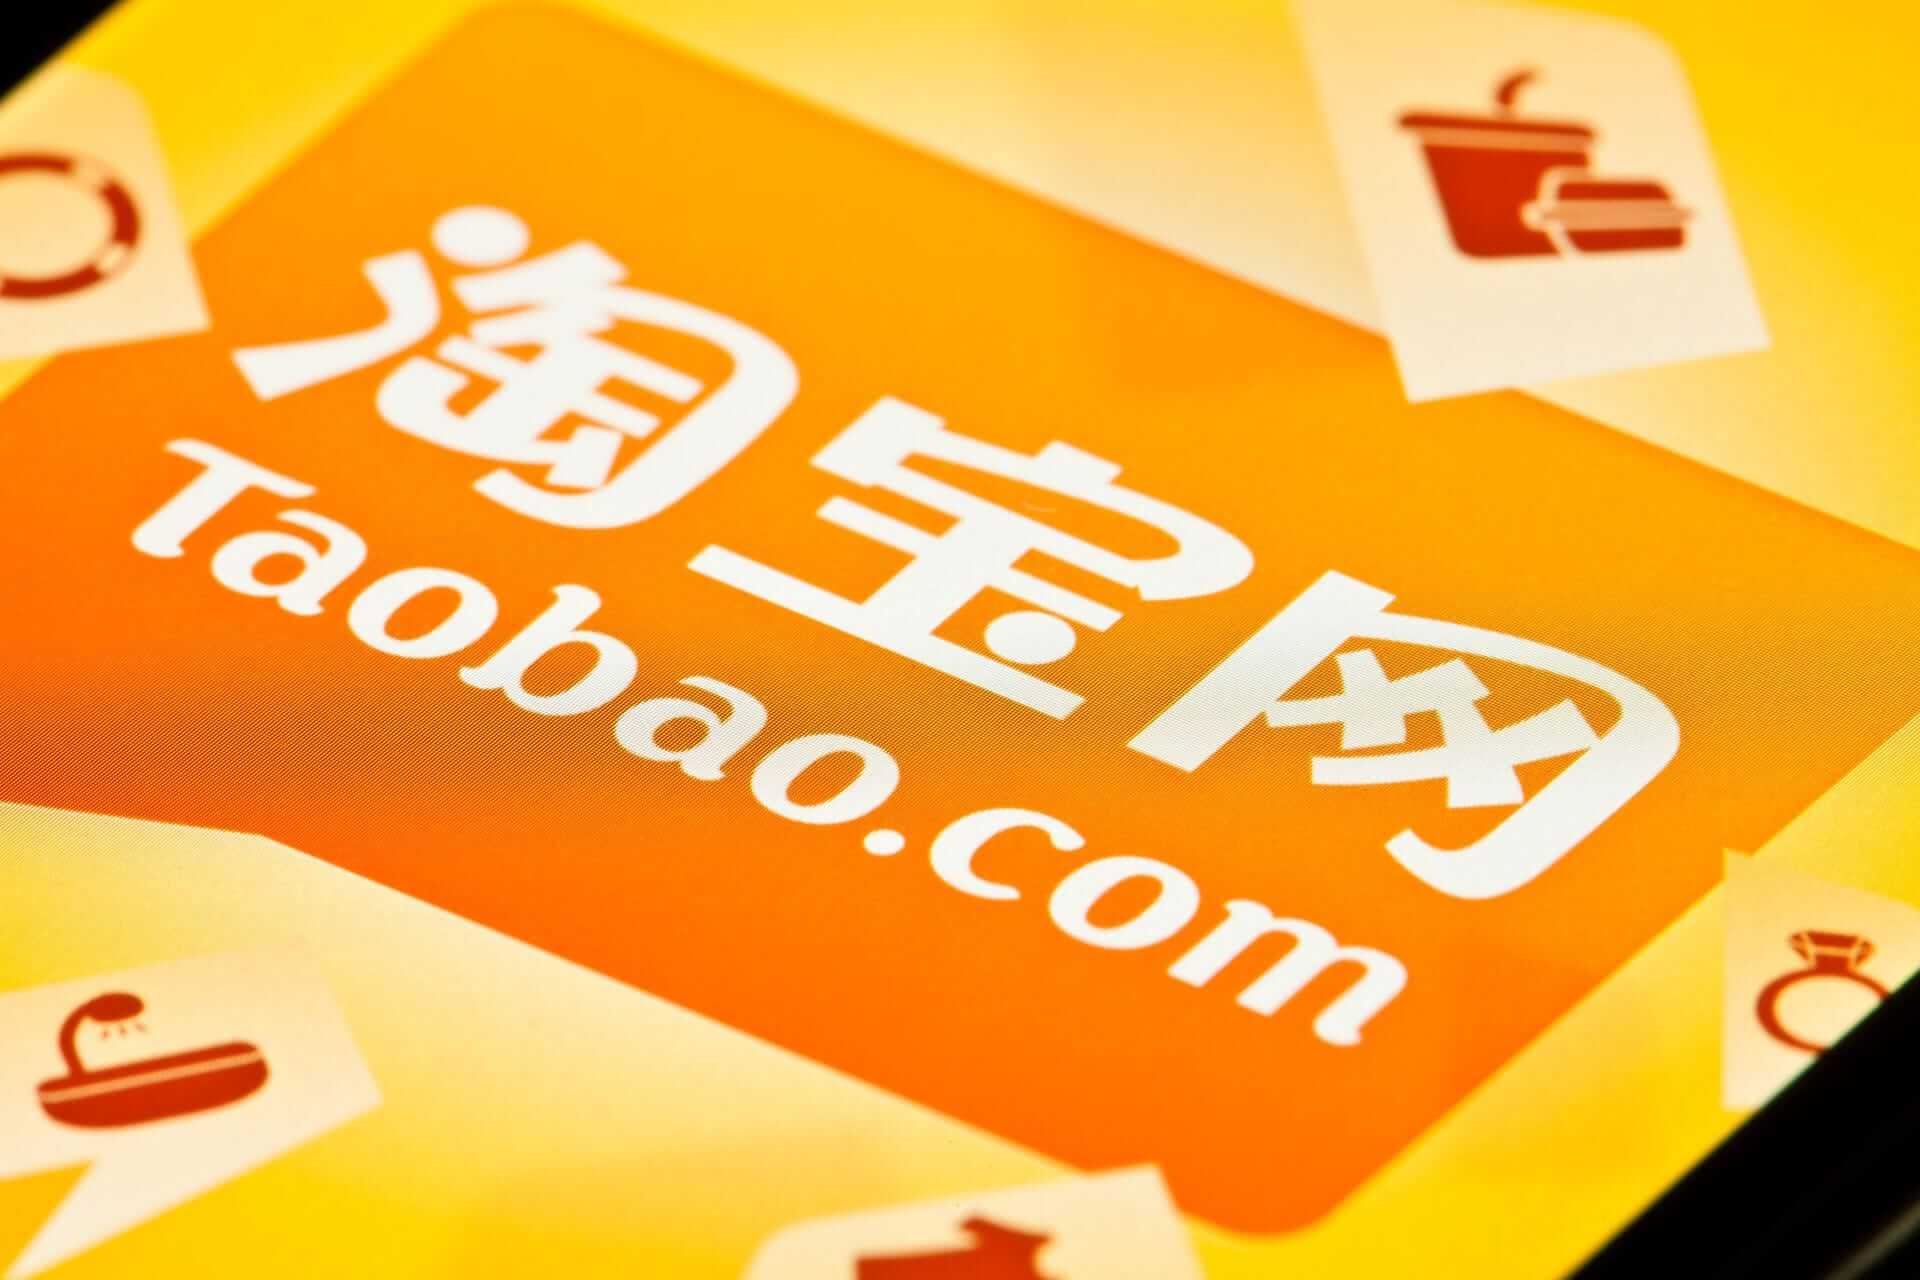 Taobao подарит покупателям платформы денежные призы общей стоимостью 1 млрд юаней в преддверии распродажи 11.11